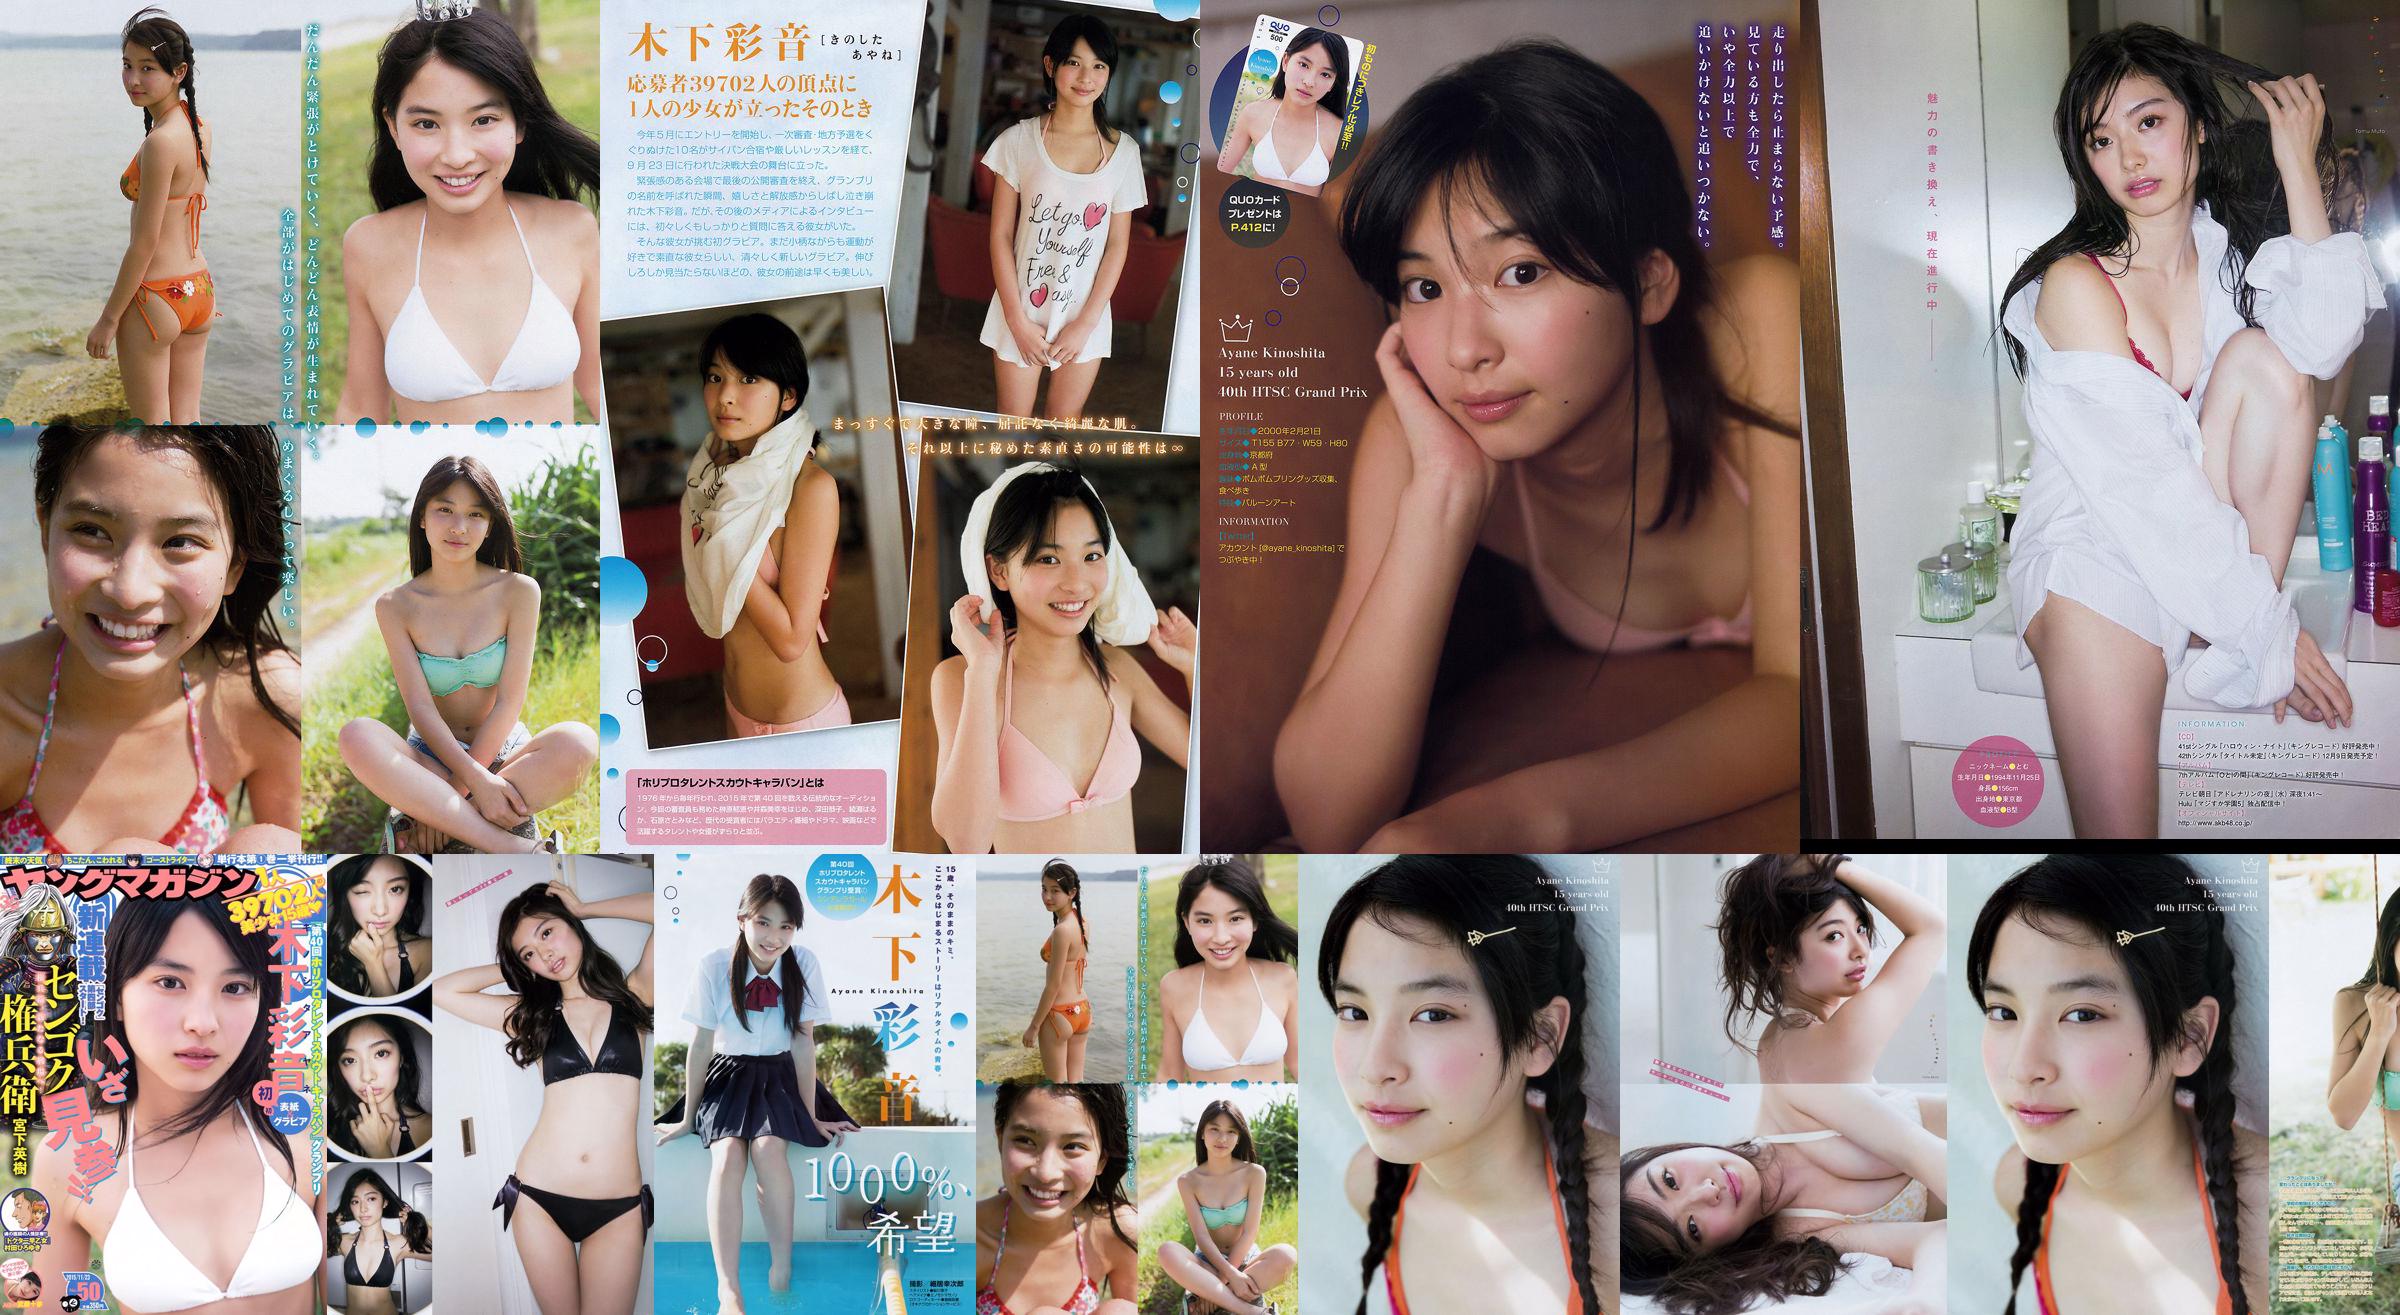 [Tạp chí trẻ Ayane Kinoshita Tomu Muto] Ảnh số 50 năm 2015 No.a7047e Trang 1